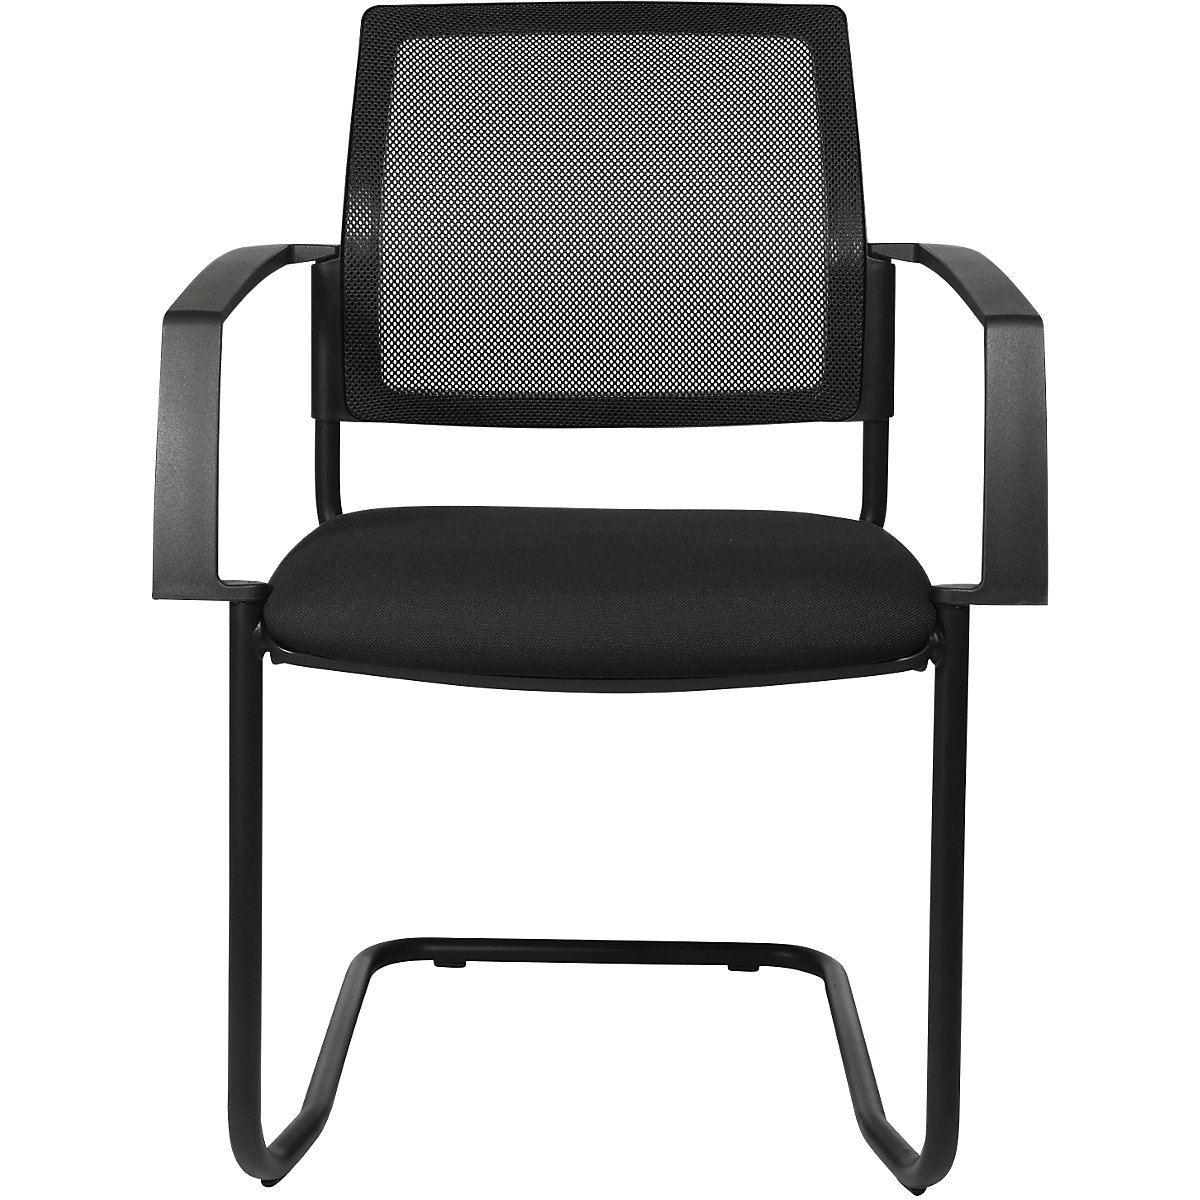 Síťovaná stohovací židle - Topstar